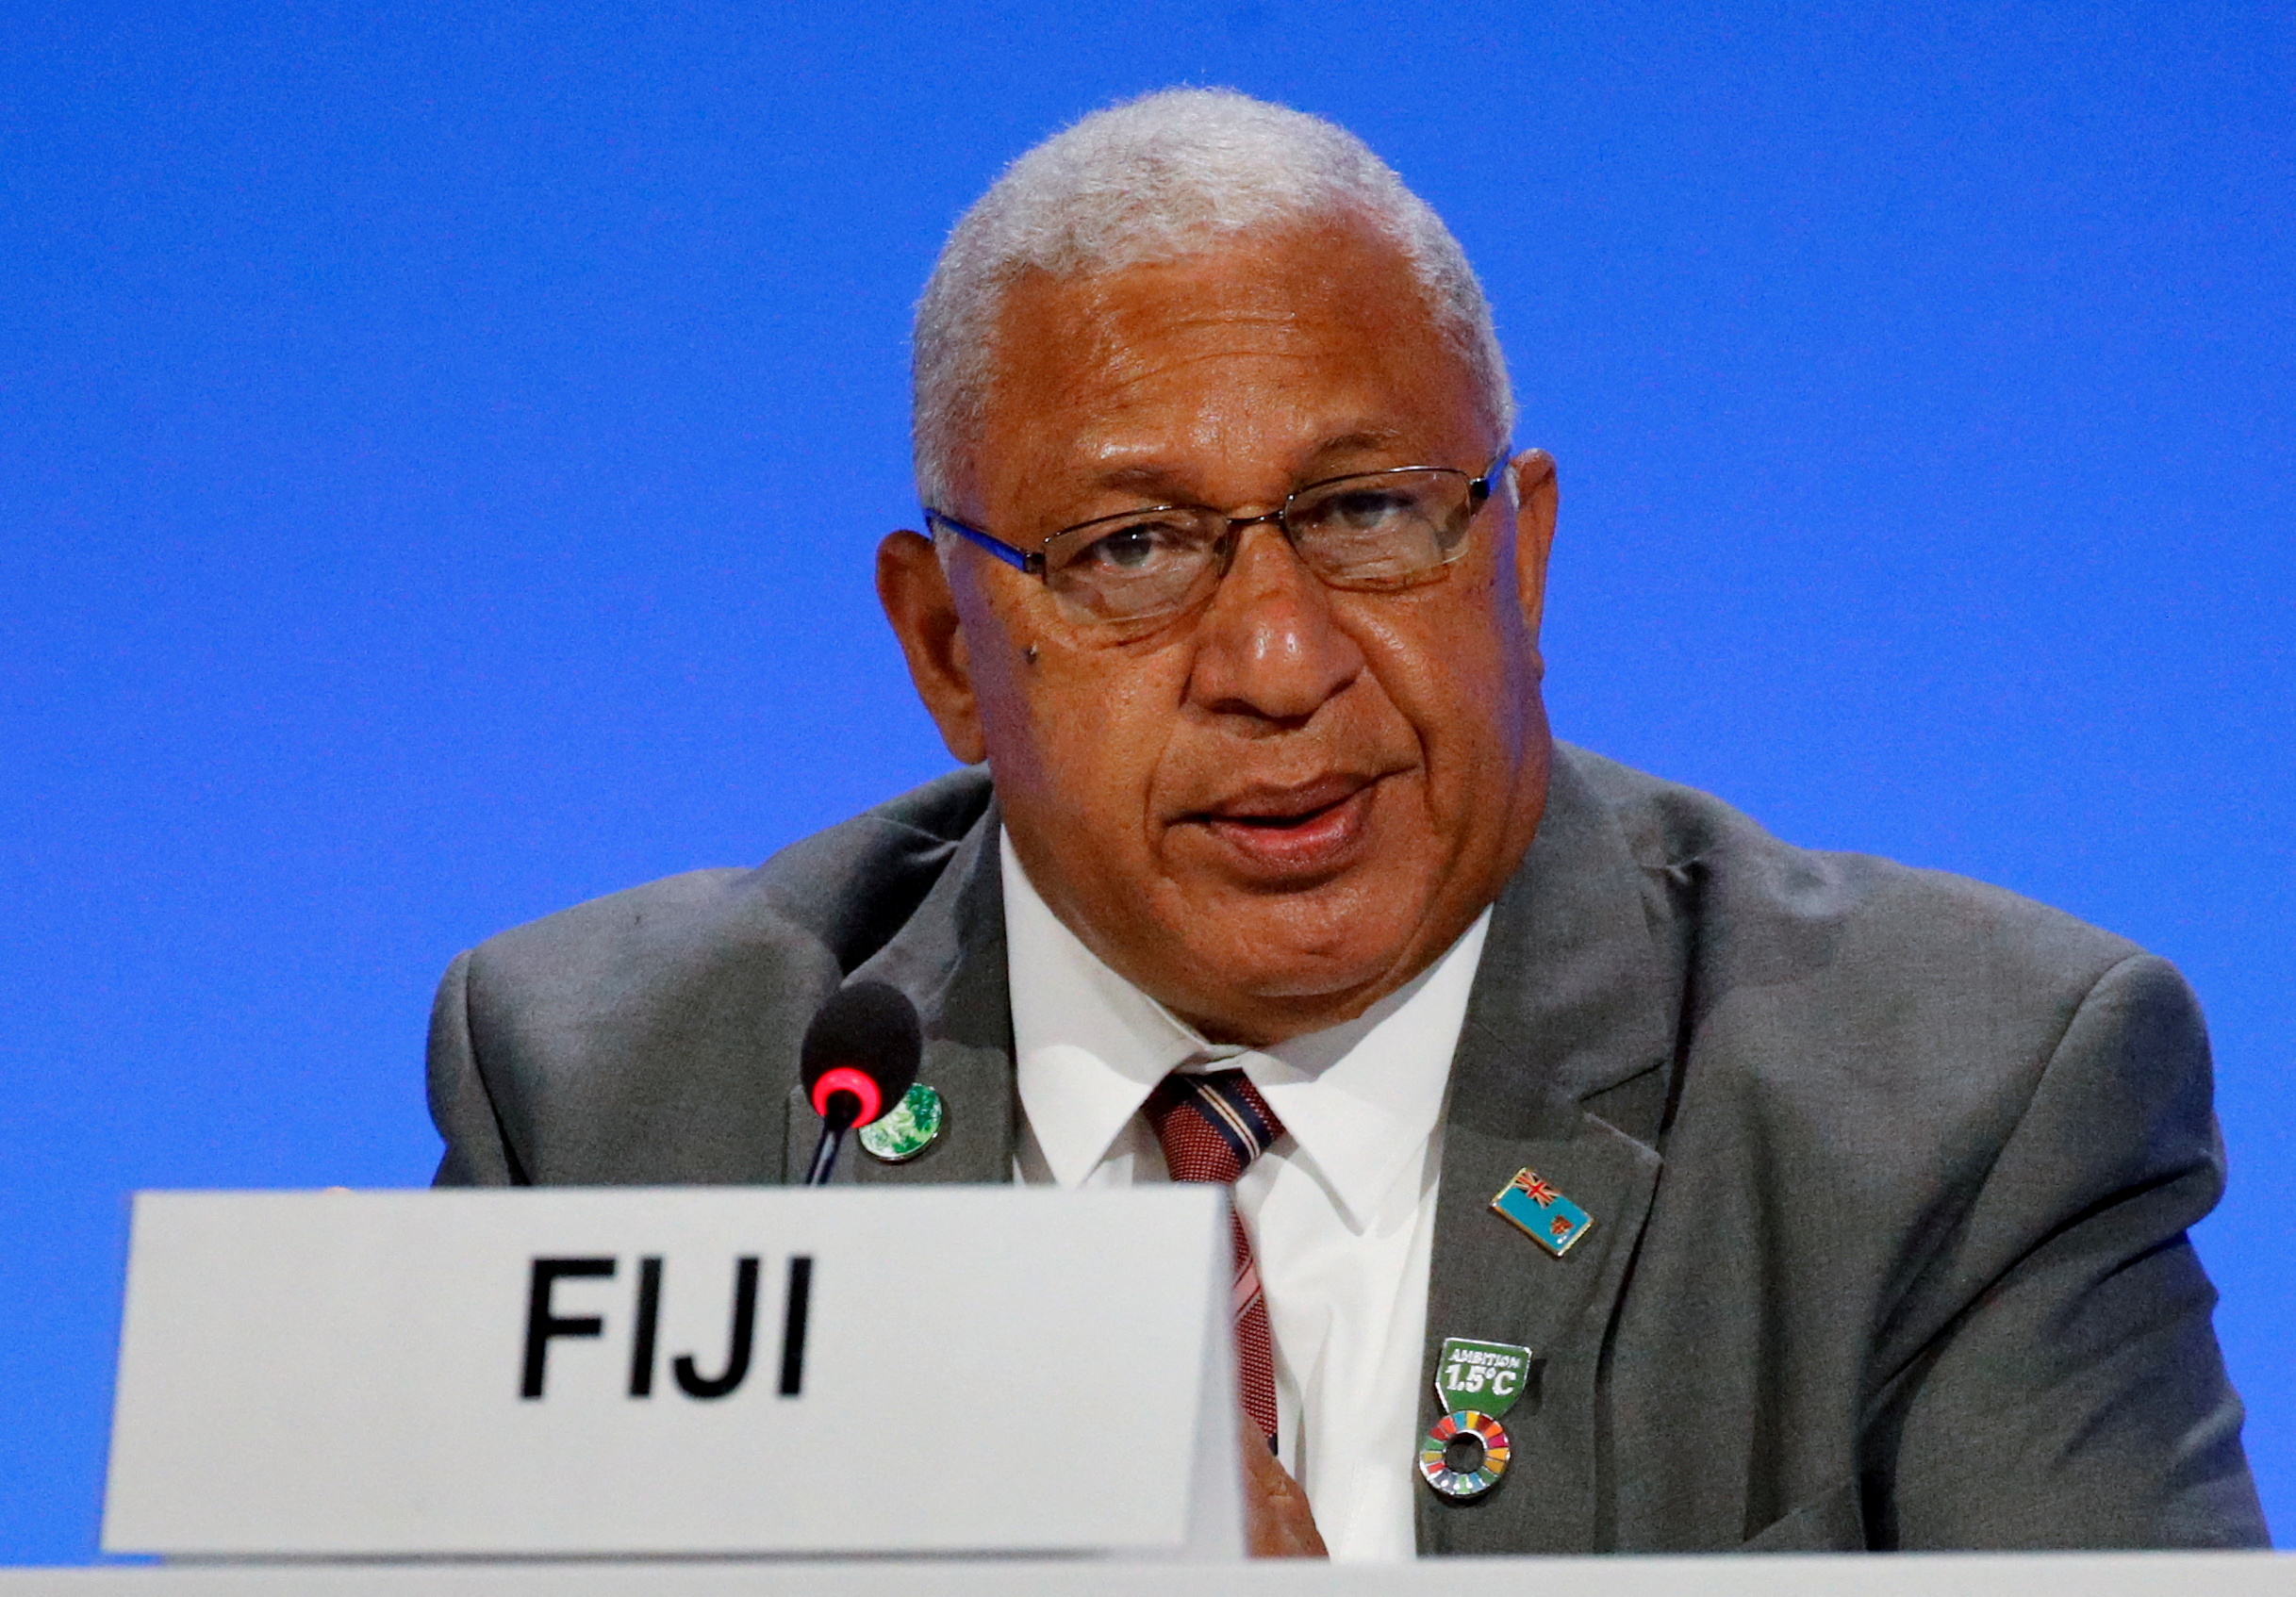 Fiji's Prime Minister Frank Bainimarama at COP26 in Glasgow